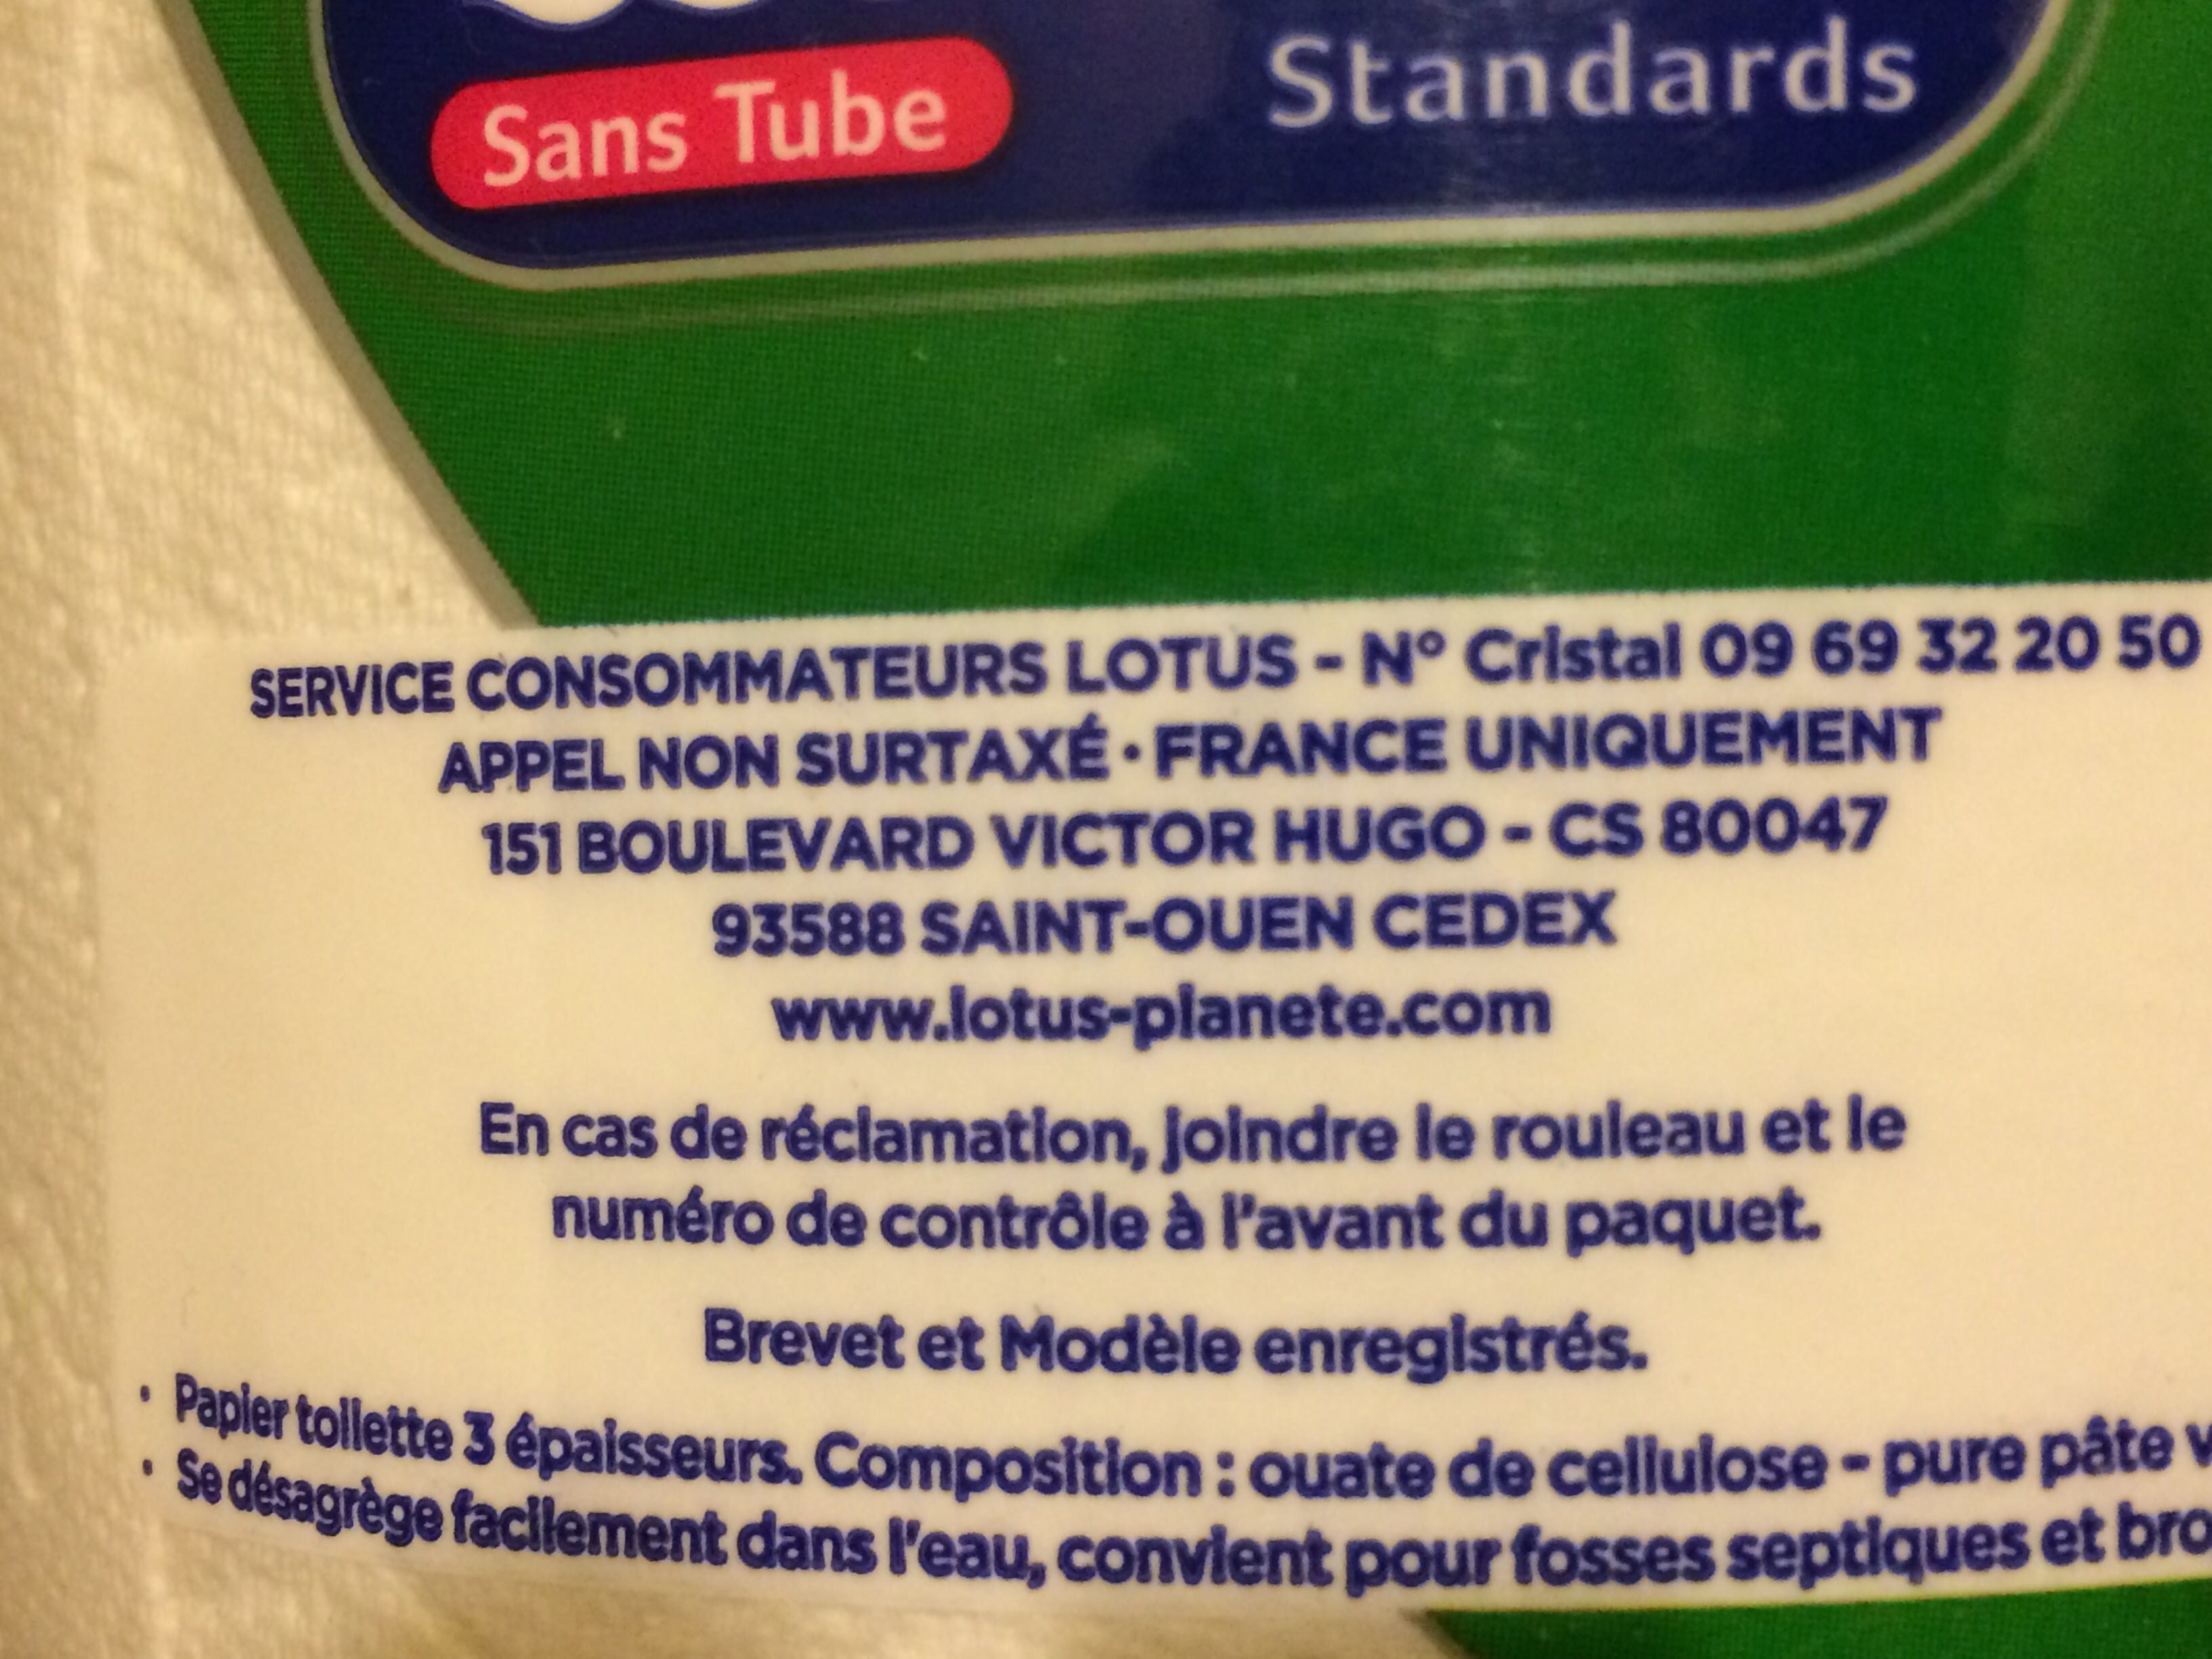 Papier toilette Moltonel - Ingredients - fr